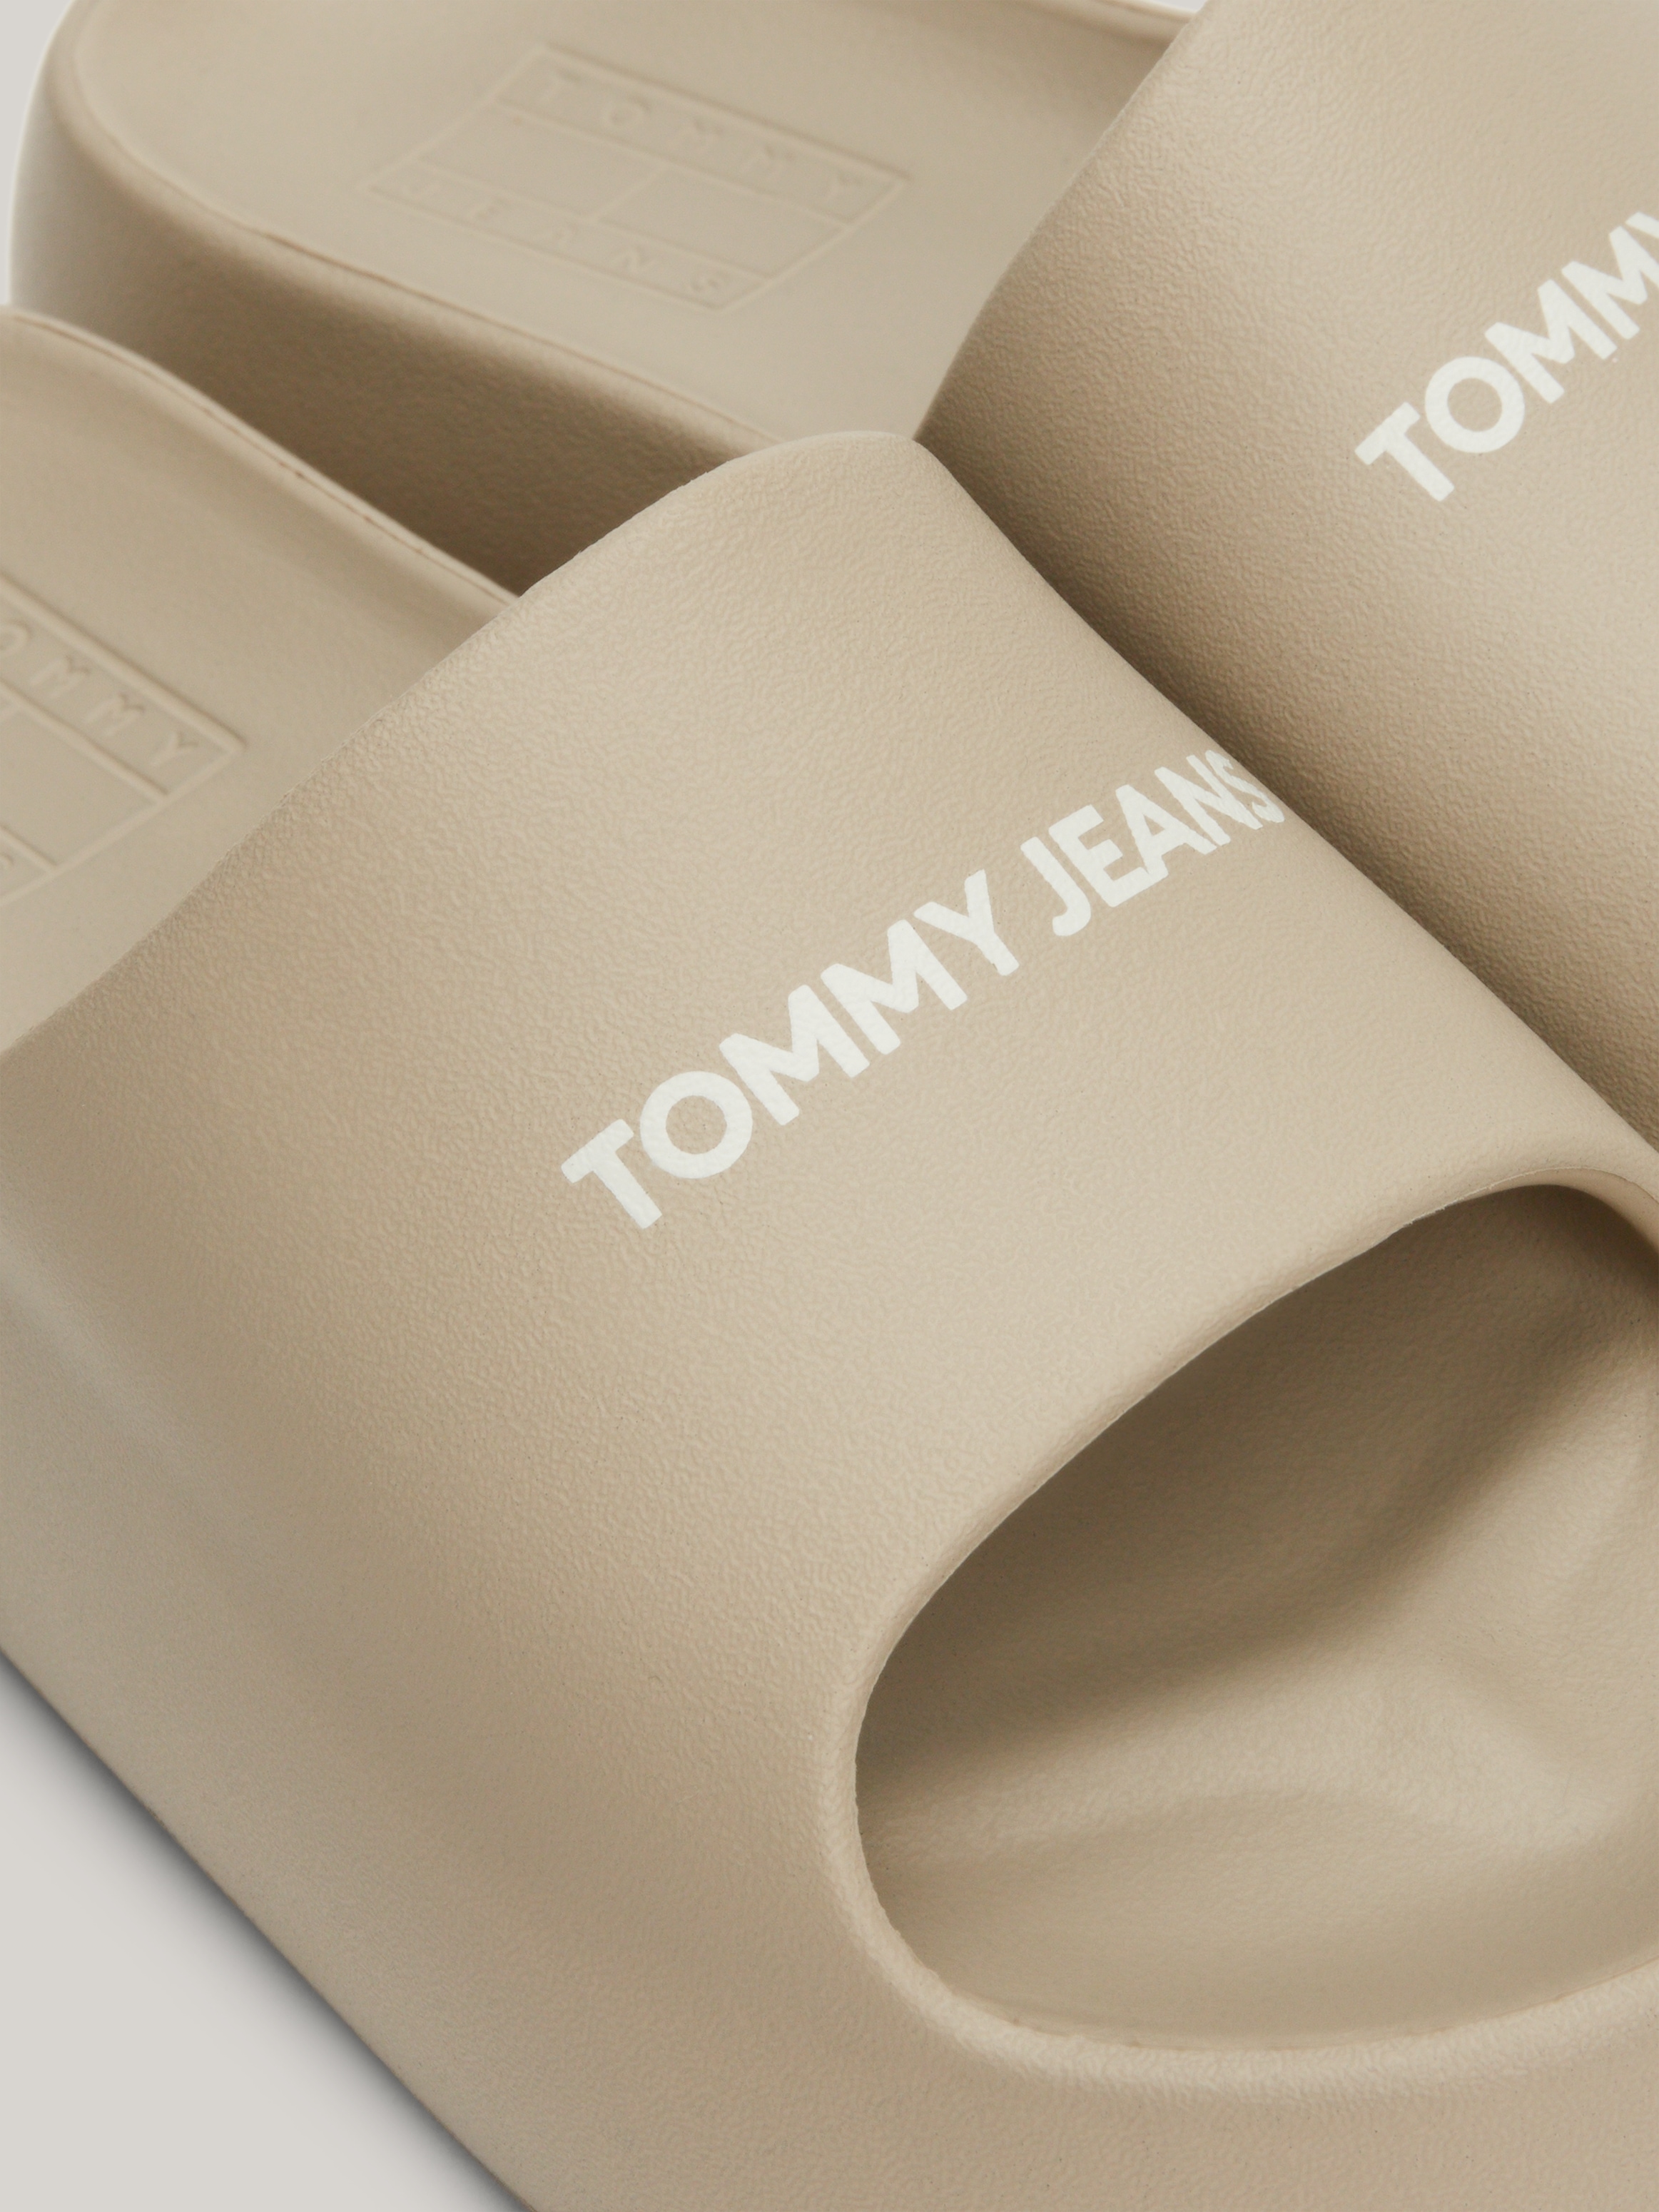 Tommy Jeans Pantolette »TJW CHUNKY FLATFORM SLIDE«, Plateau, Sommerschuh, Schlappen mit kontrastfarbenem Logoschriftzug